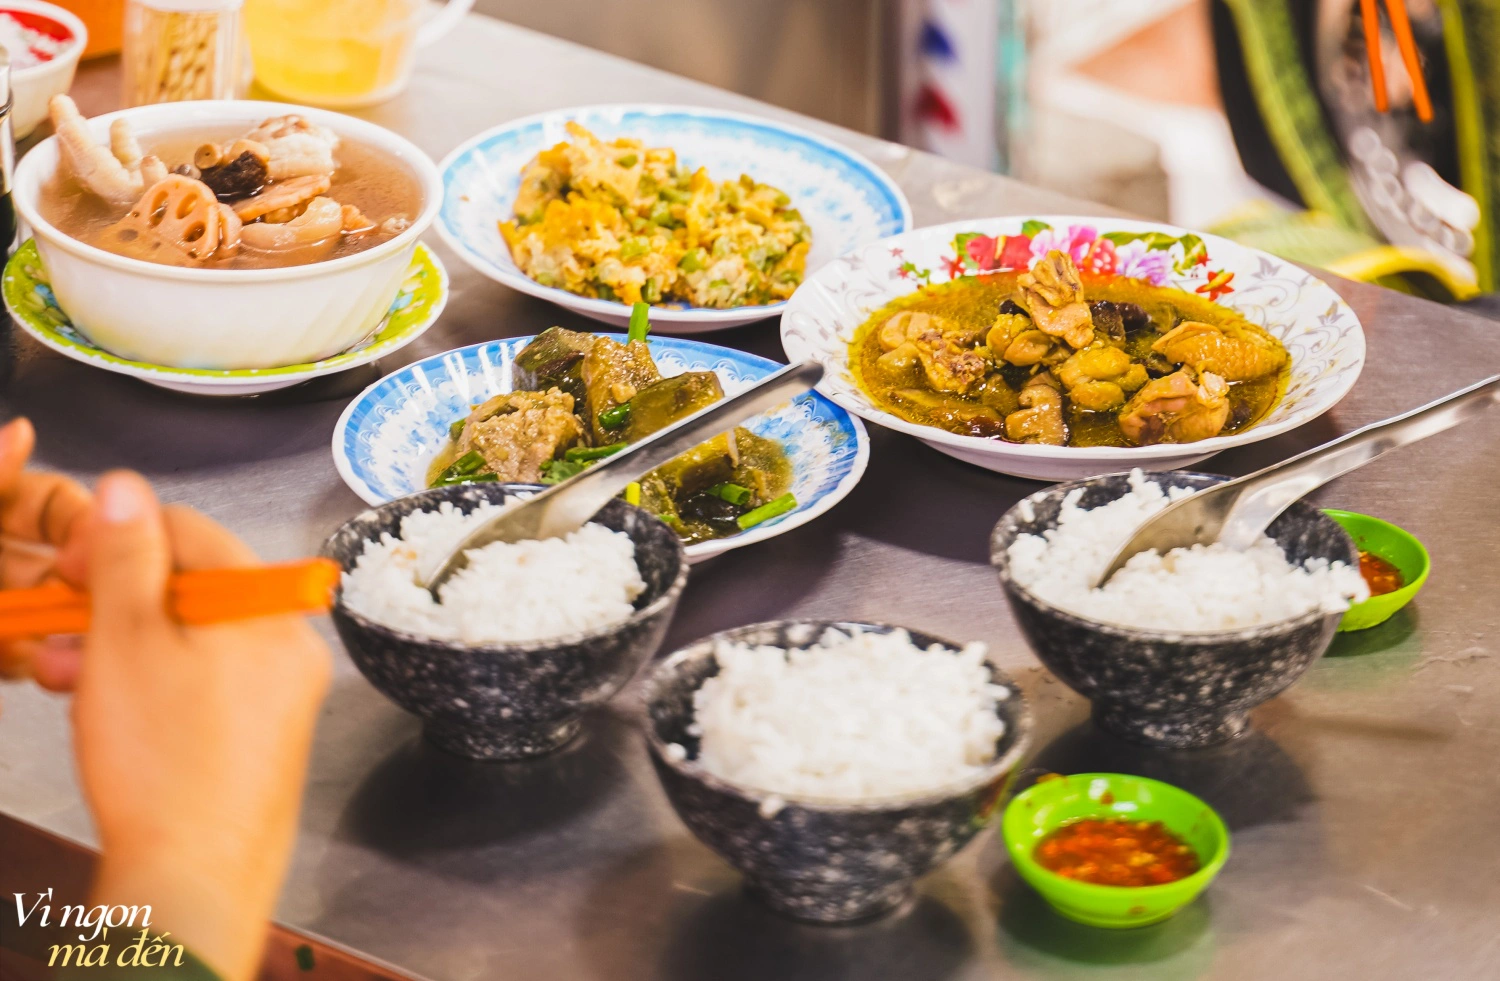 Đi ăn cơm bình dân kiểu người Hoa: Cửa tiệm bán 3 đời mỗi ngày làm hơn 30 món chất lượng, đông khách đến nỗi không dám mở trên ứng dụng giao đồ ăn - Ảnh 7.